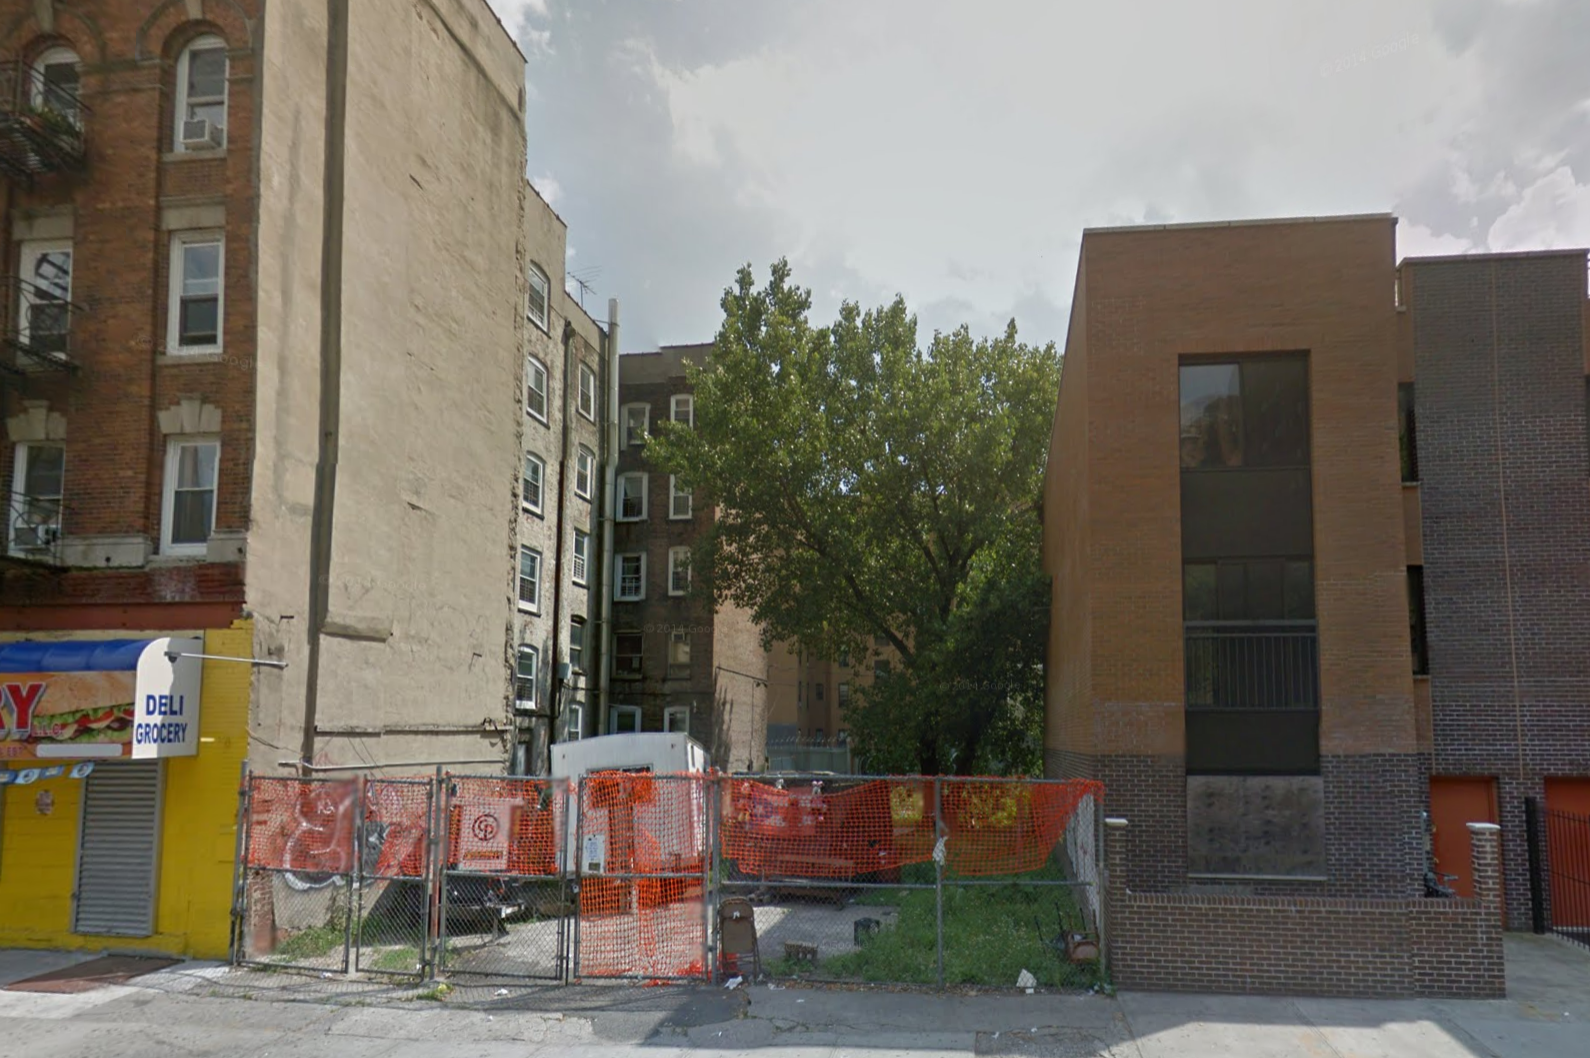 764 East 152nd Street, image via Google Maps